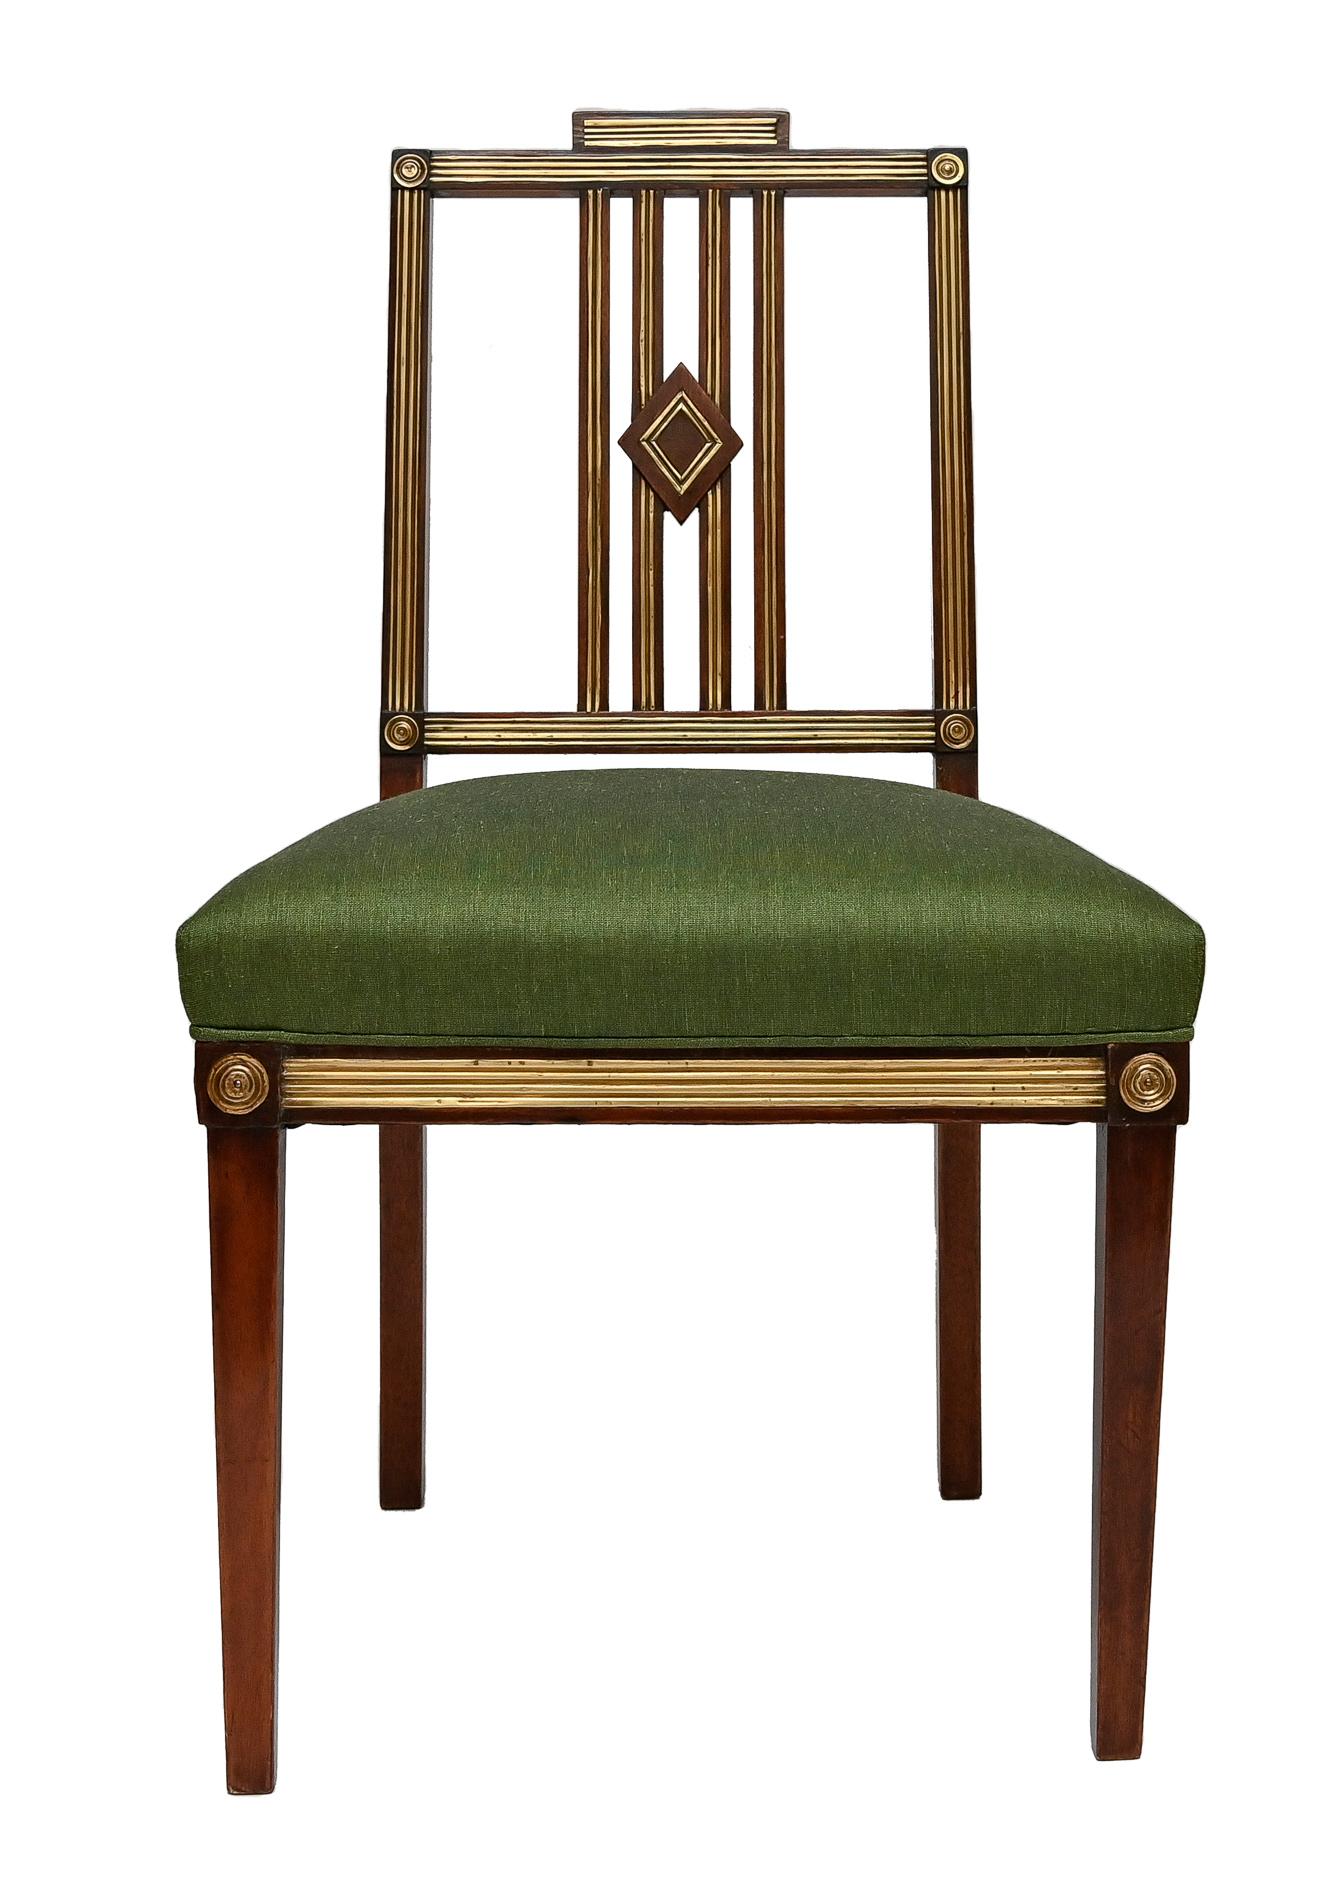 4 chaises pour une salle à manger, vers 1800, provenance probablement d'une maison noble des pays baltes
Acajou, dossiers et cadres d'assise décorés de fils de laiton, conçus dans une stricte modestie mais néanmoins de grande qualité.
Les surfaces